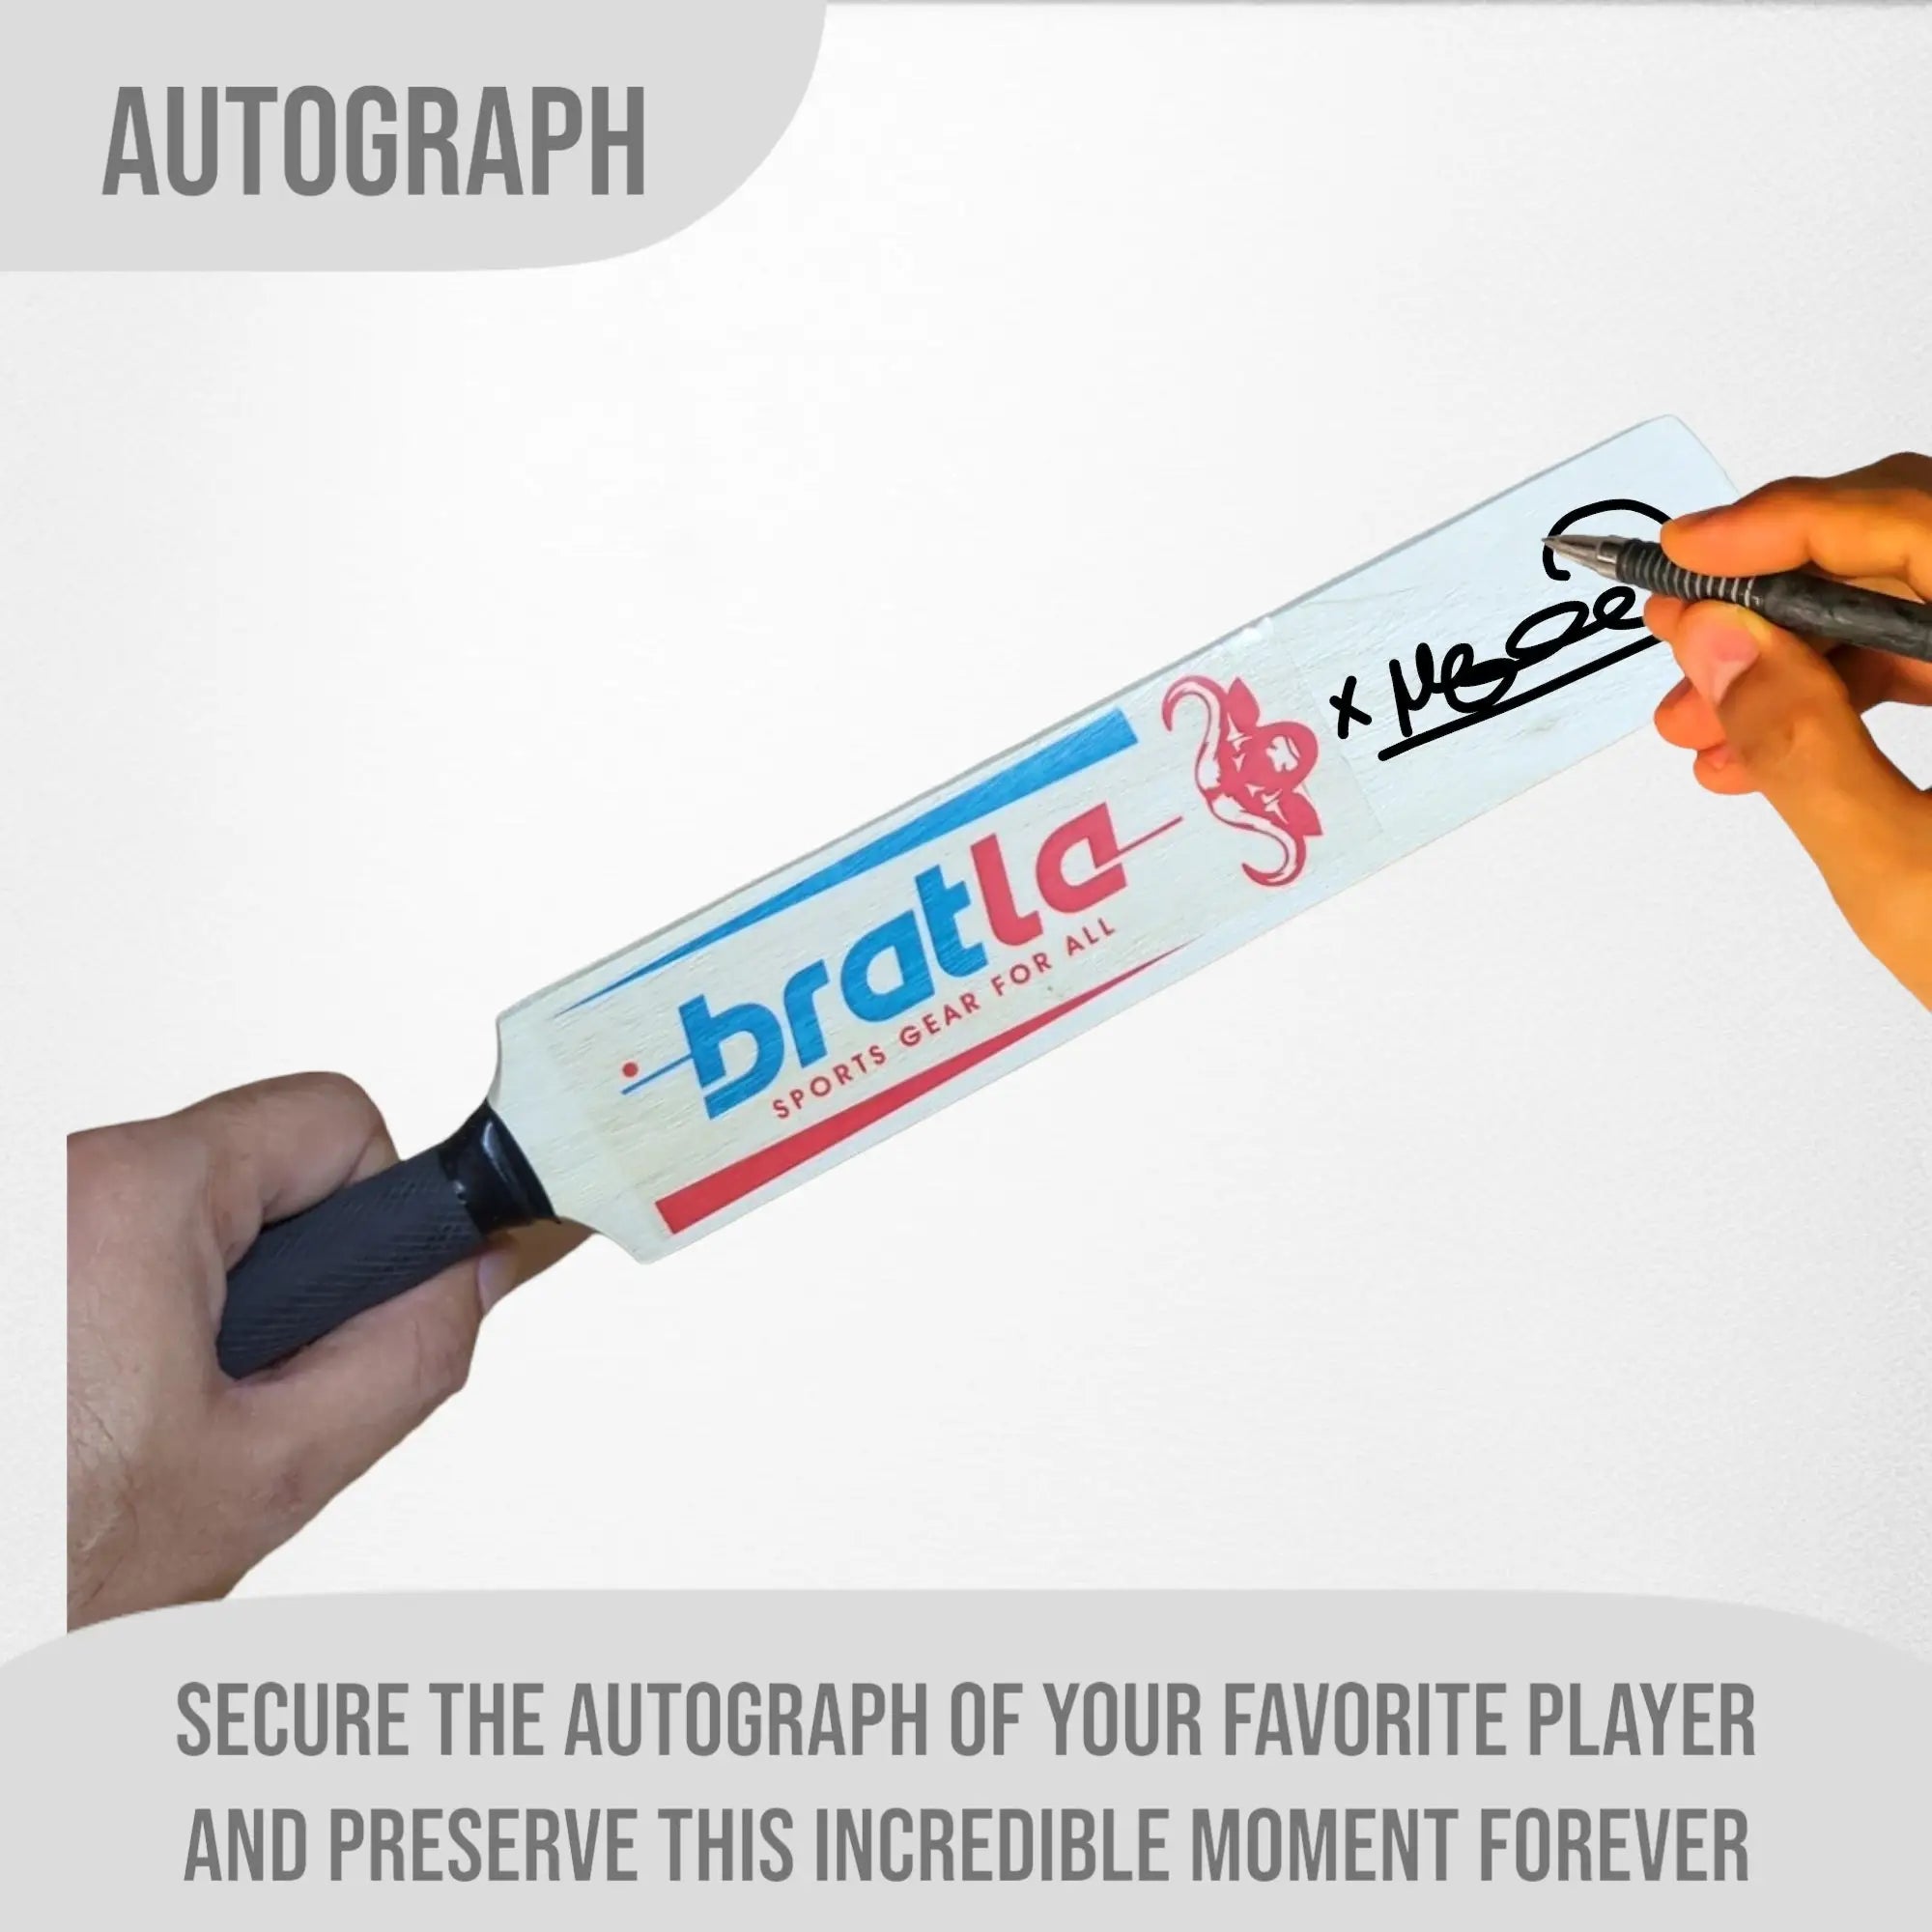 Bratla Autograph Signature Mini Cricket Bat (15 Inches) - Miniature Bat